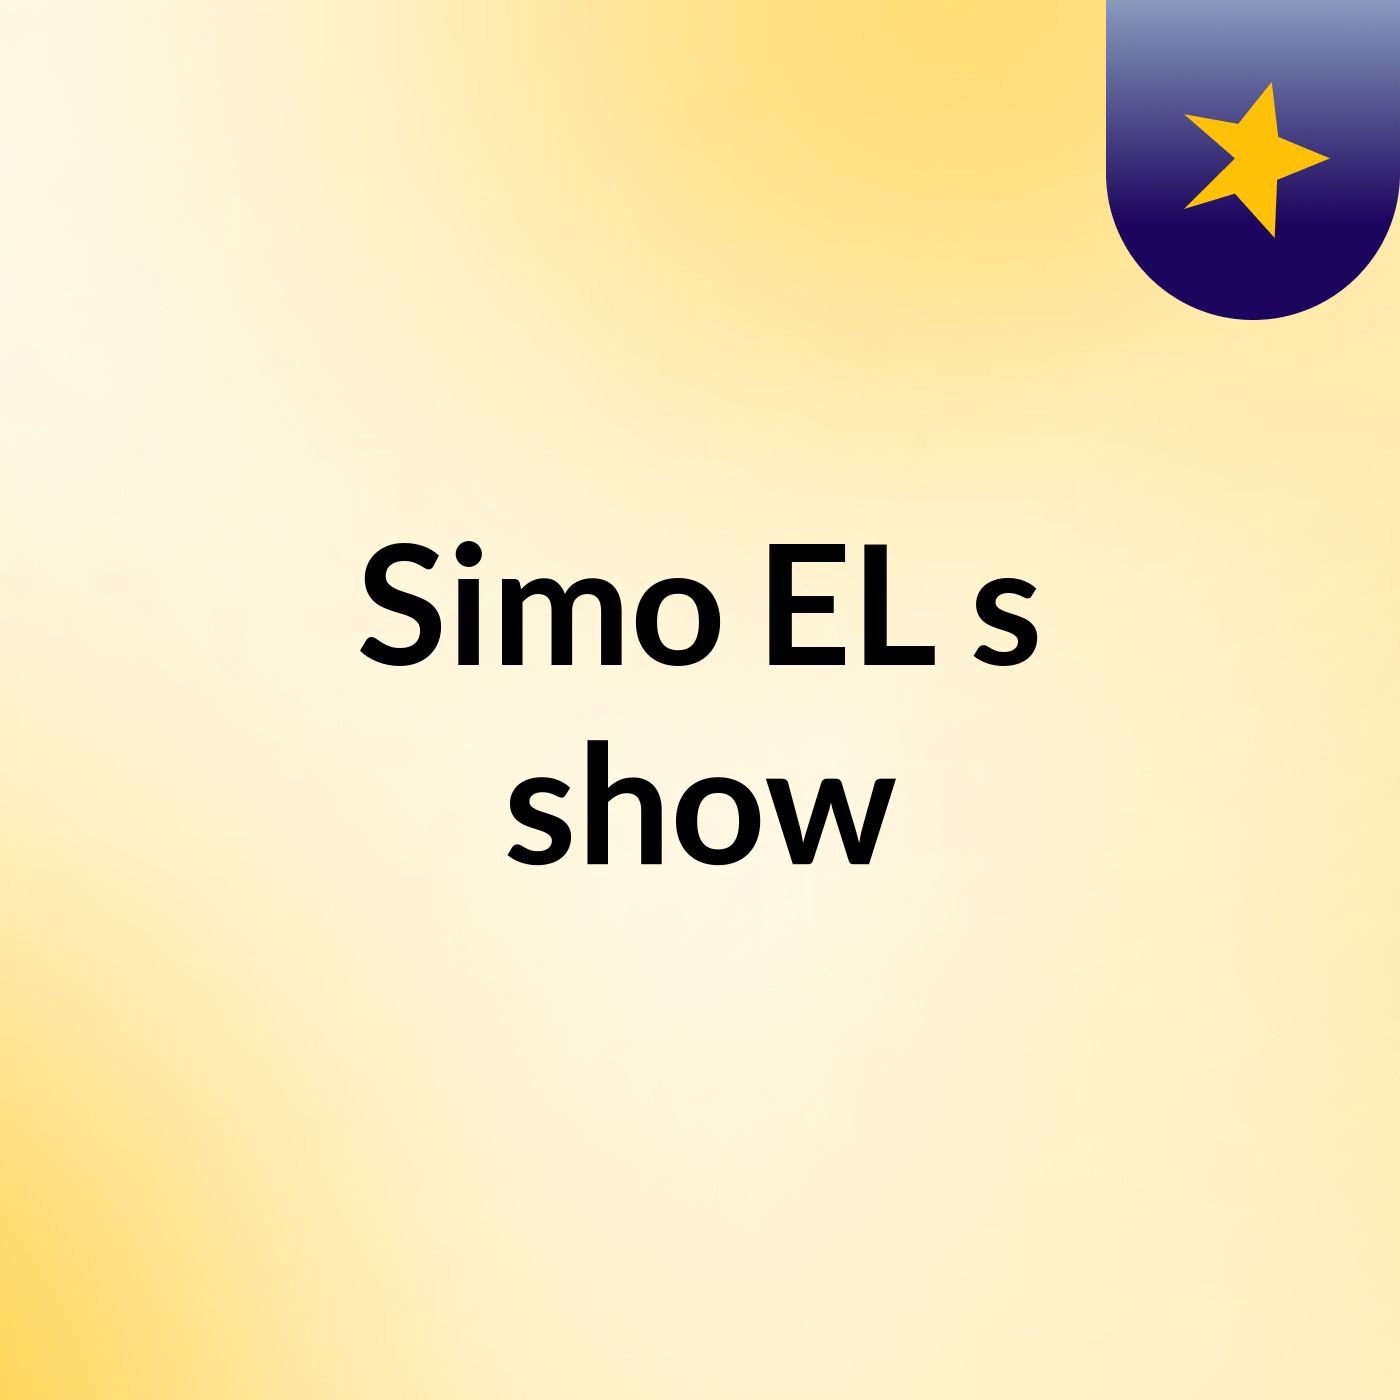 Simo EL's show